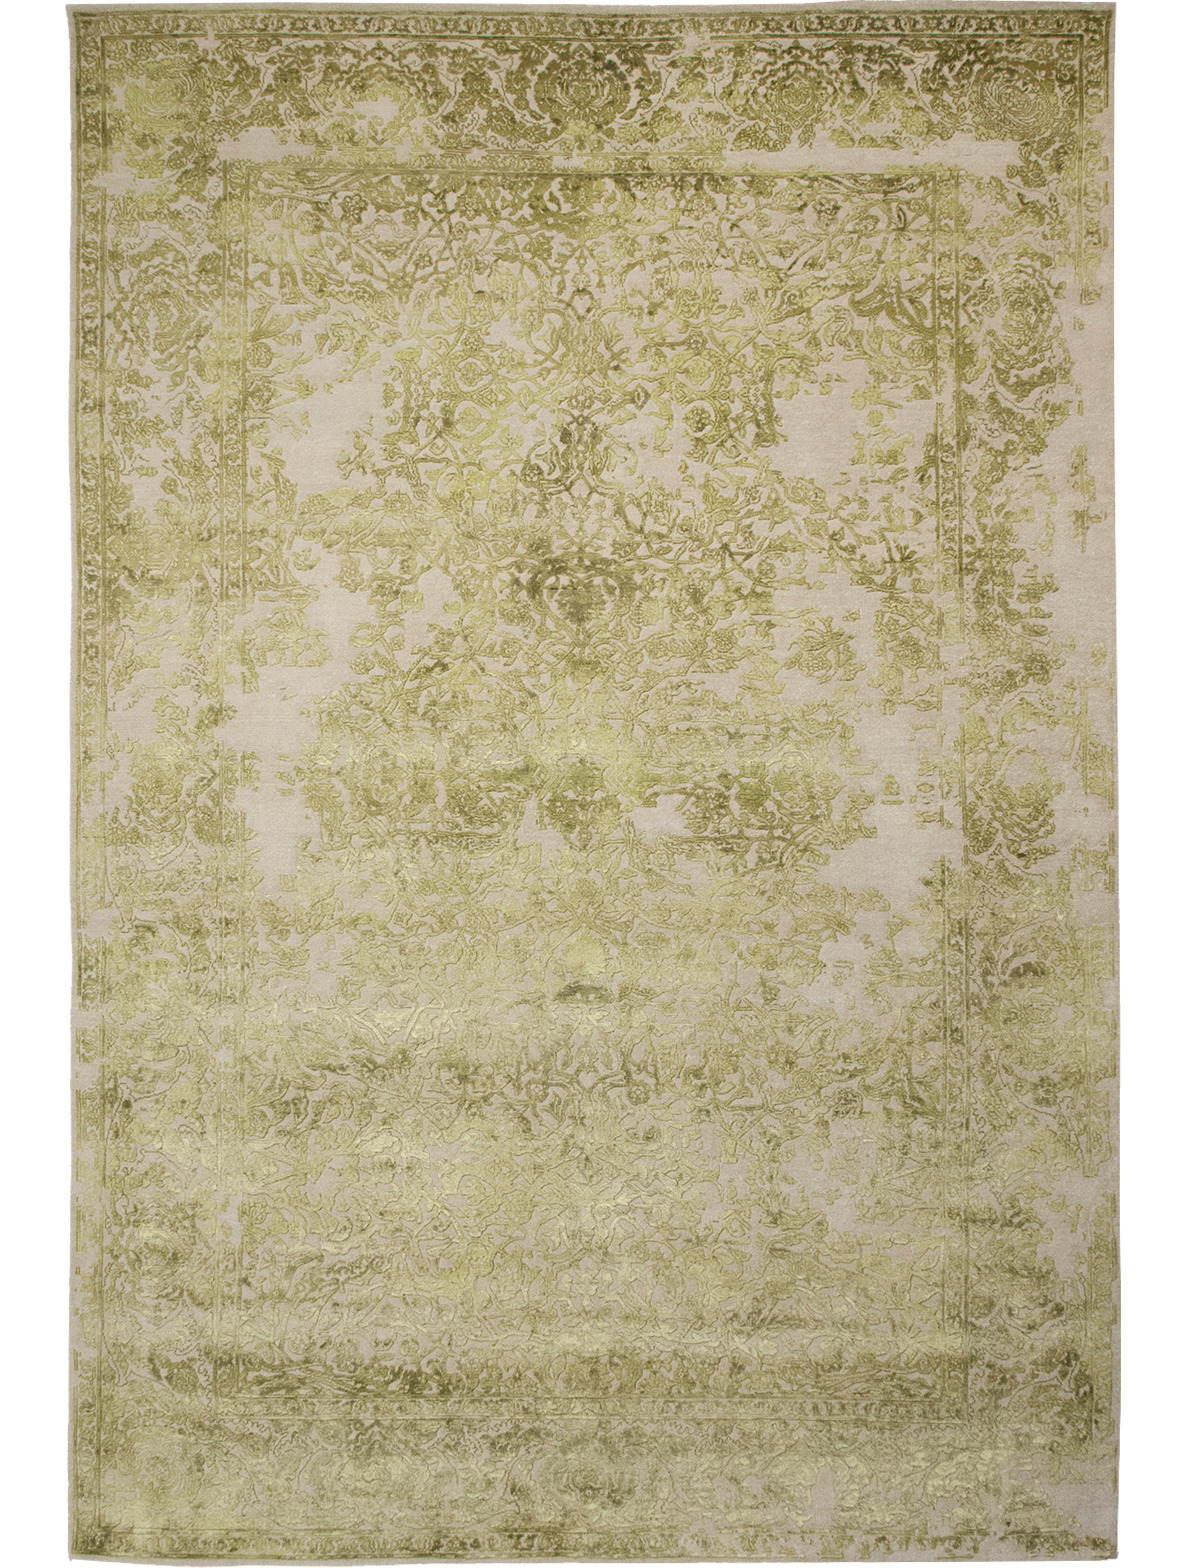 Gargy Lime Rug ☞ Size: 300 x 400 cm